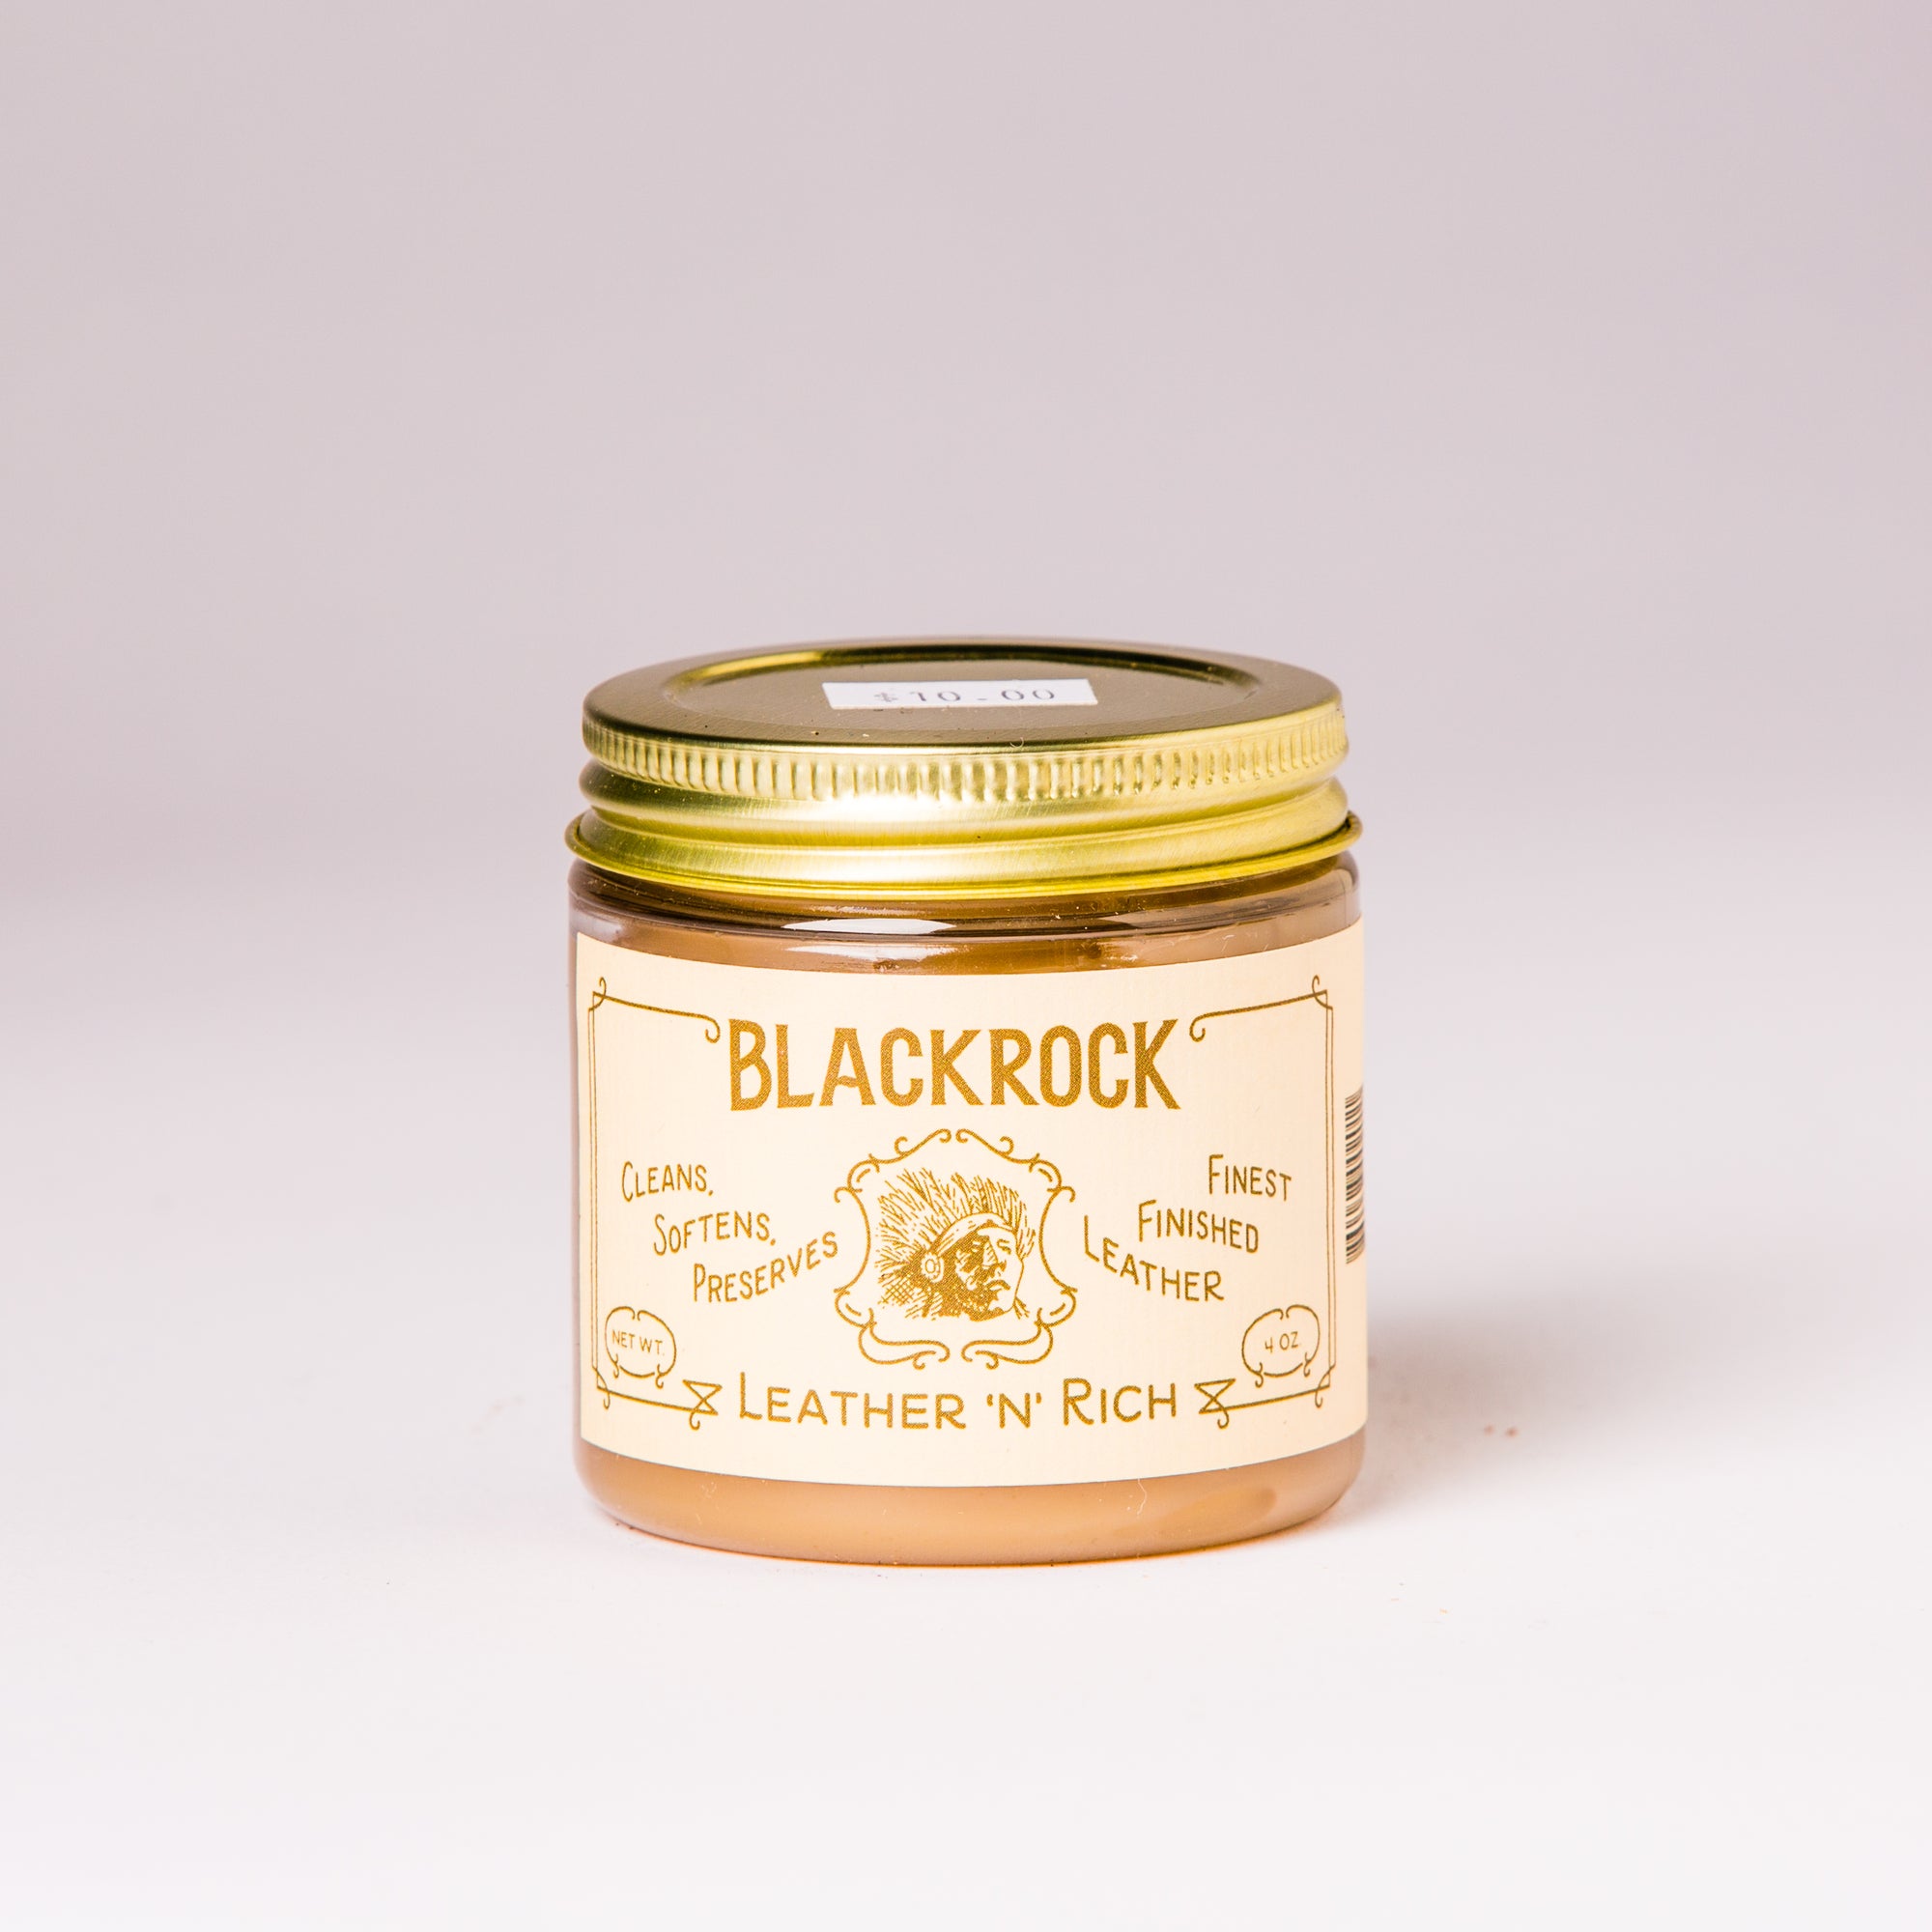 Blackrock Leather ‘N’ Rich 4OZ